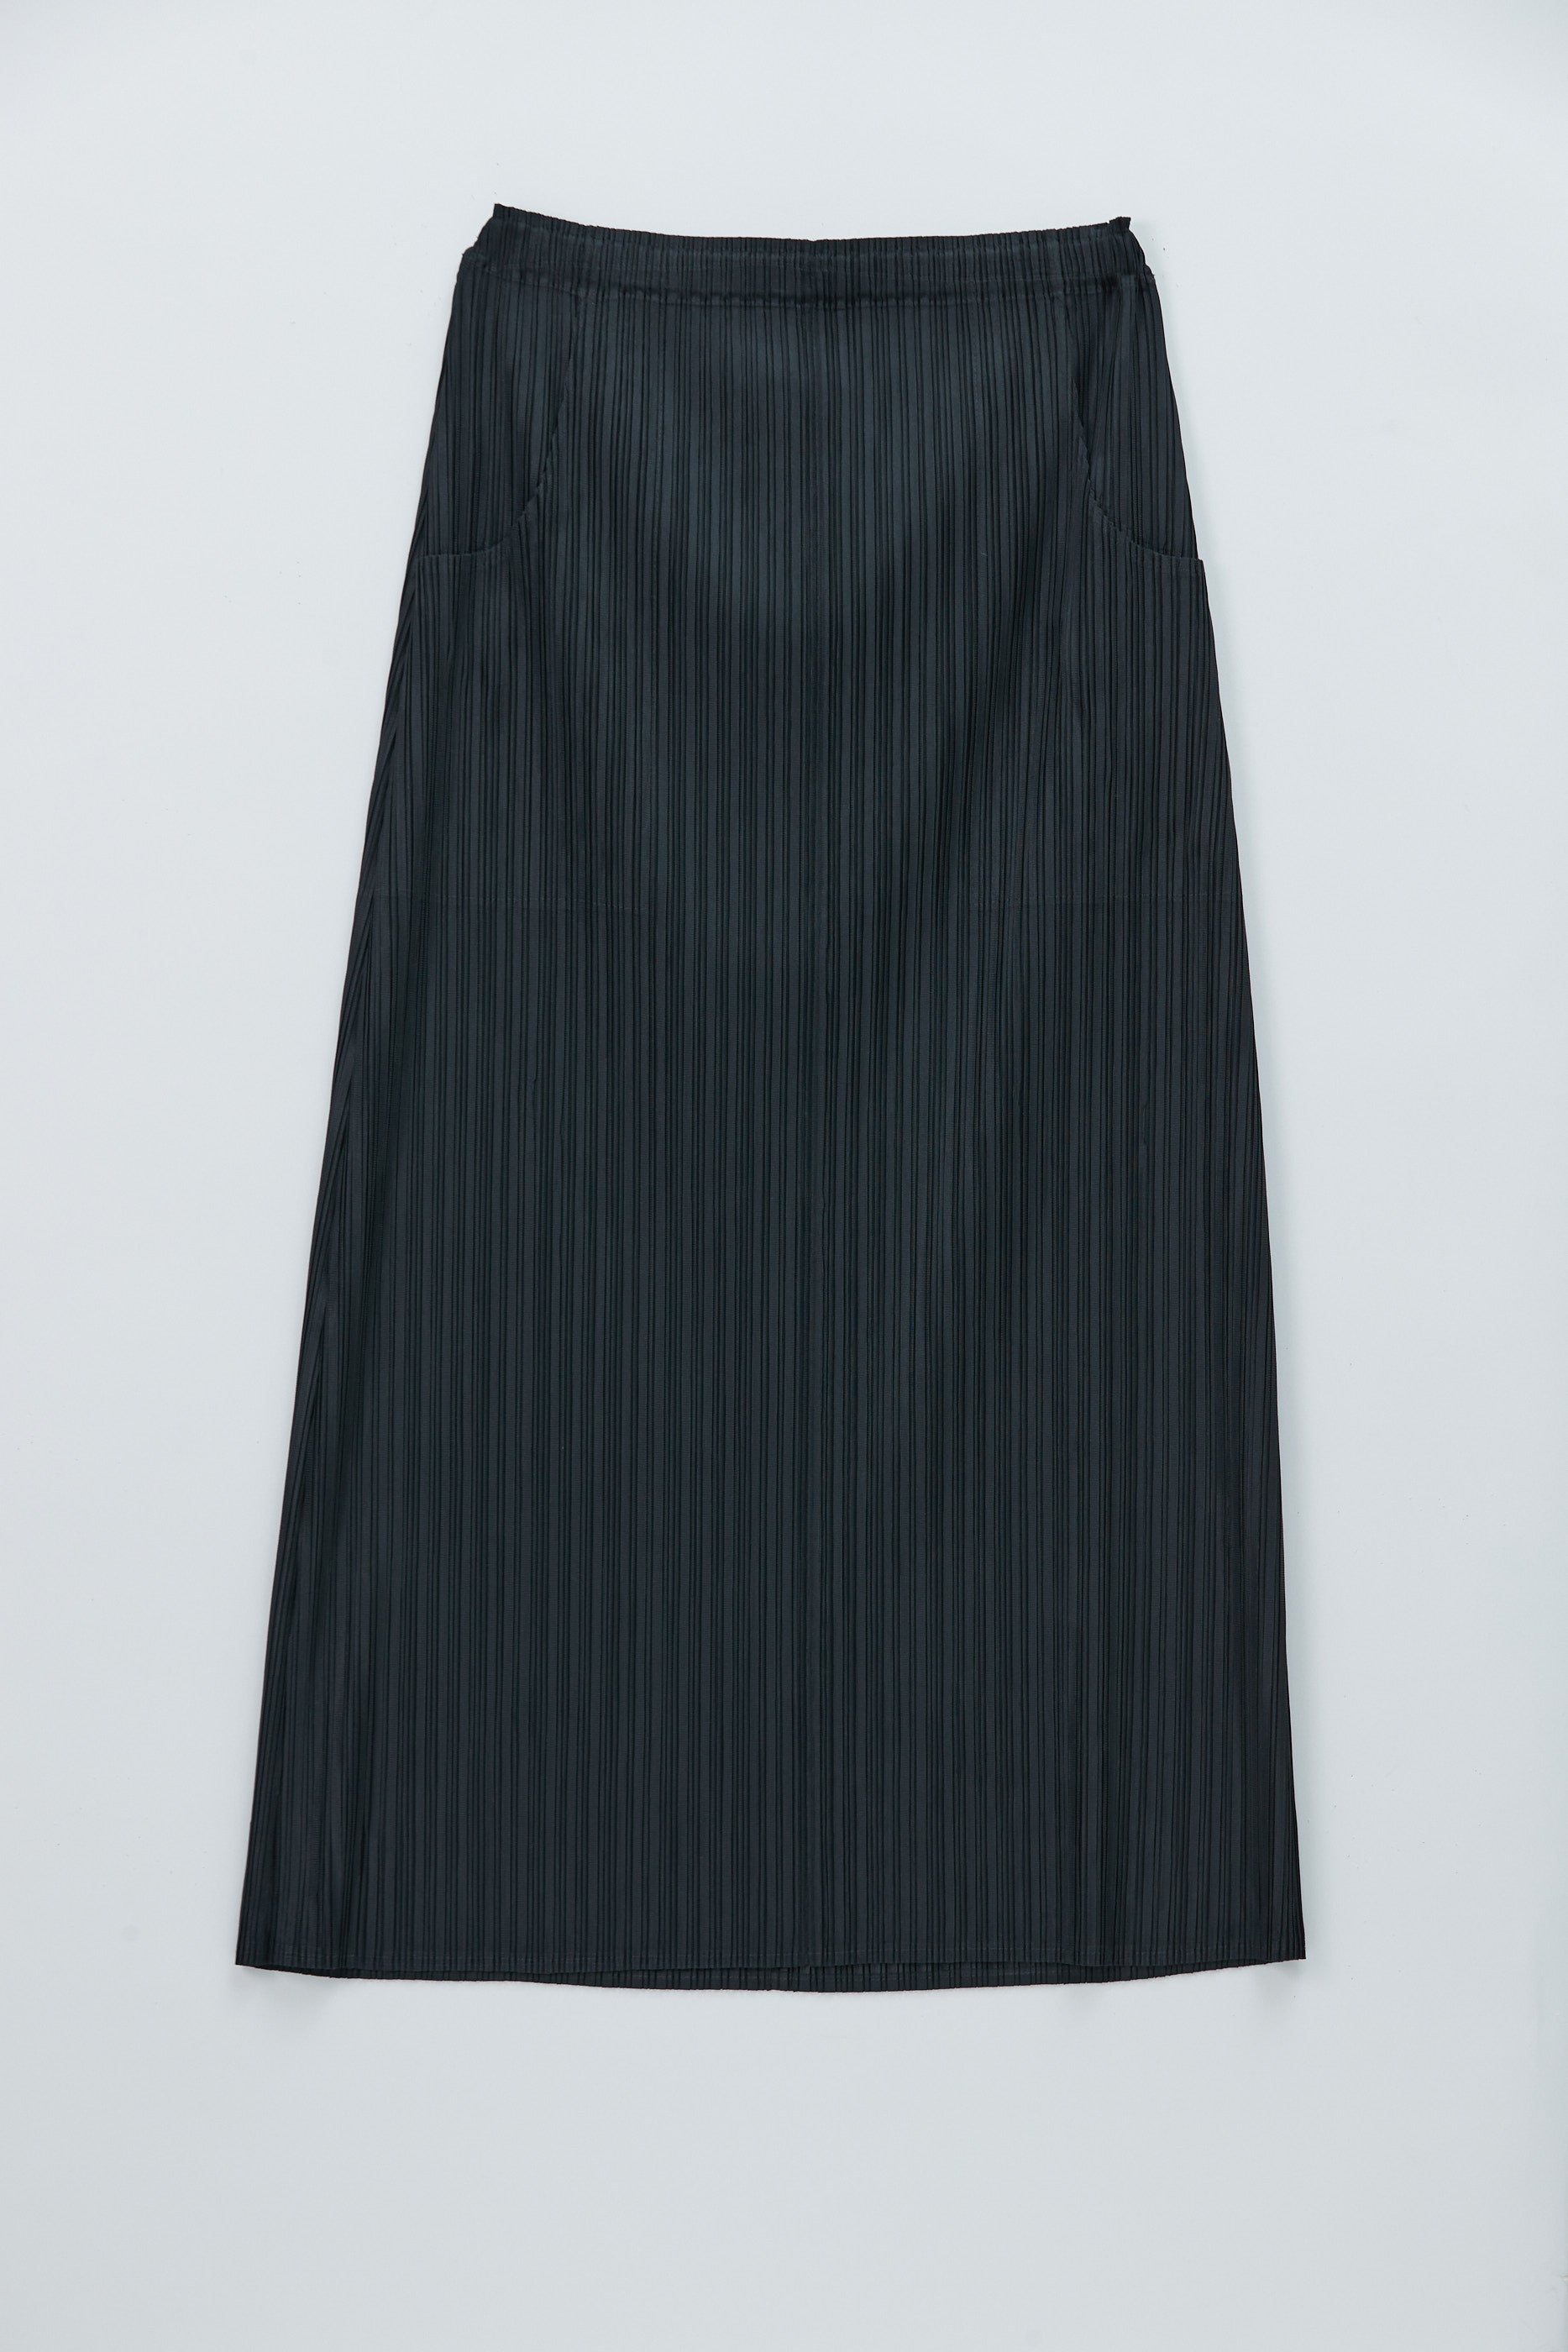 プリーツスカート スカート丈90cm – MAISON MAVERICK PRESENTS